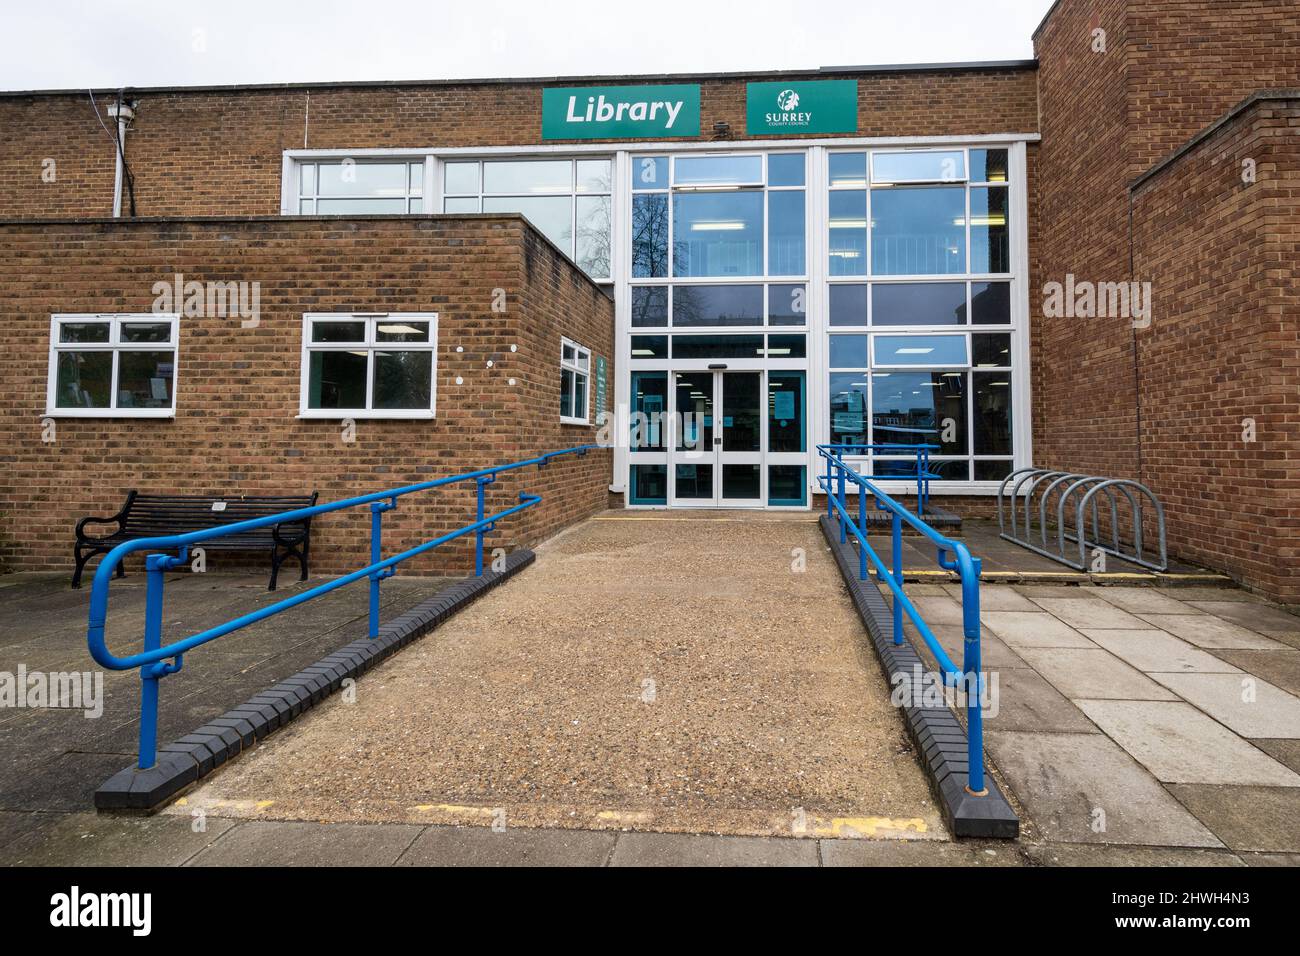 Ingresso alla biblioteca di Camberley, Surrey, Inghilterra, Regno Unito, con rampa per l'accesso per disabili su sedia a rotelle Foto Stock